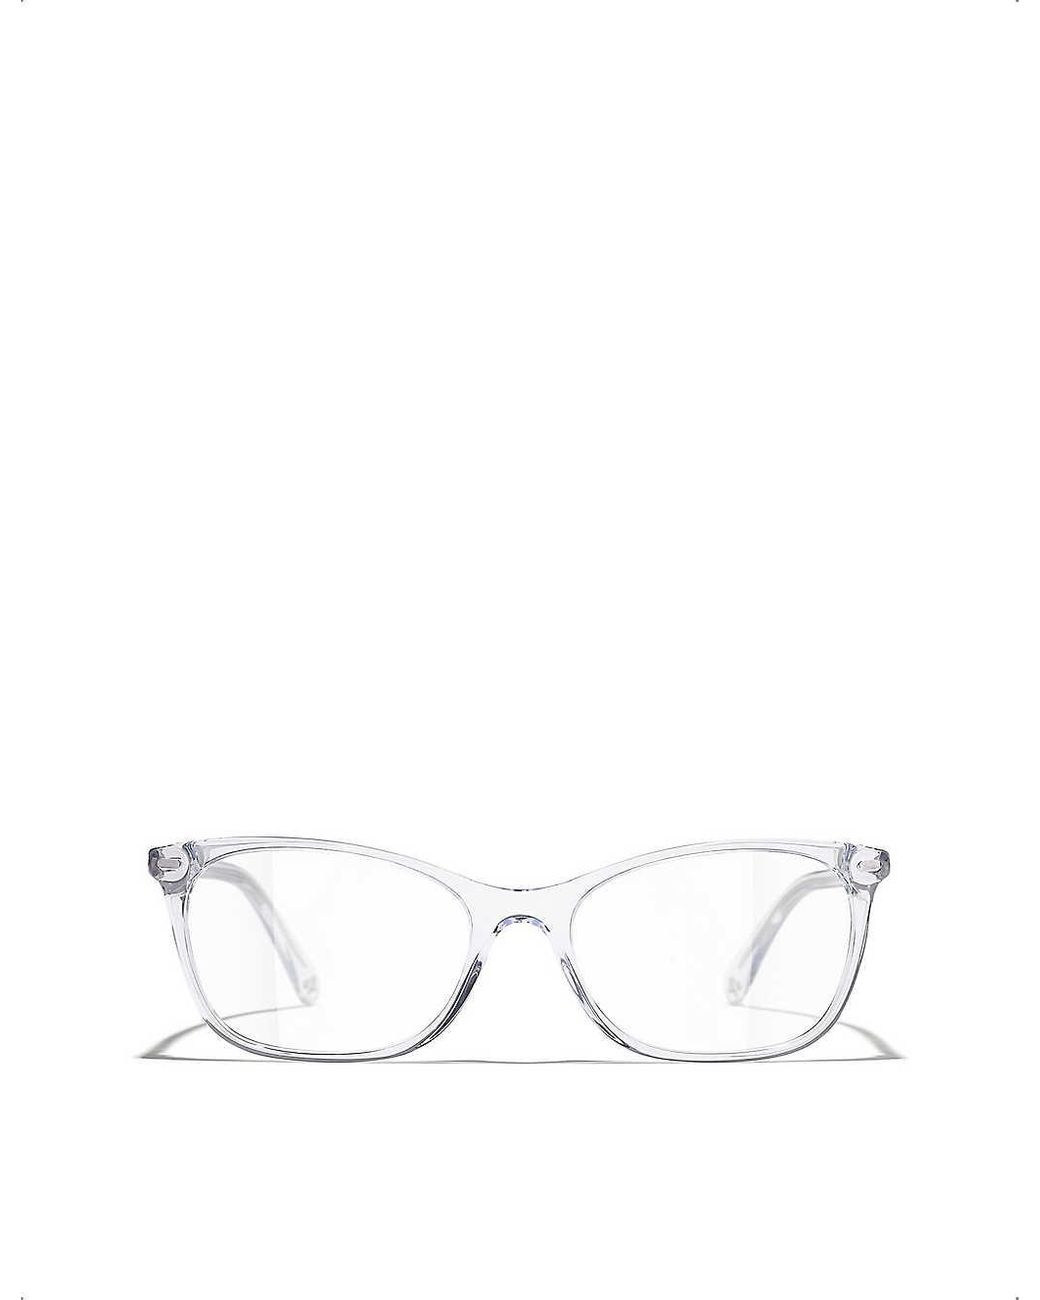 Chanel Rectangle Eyeglasses in White